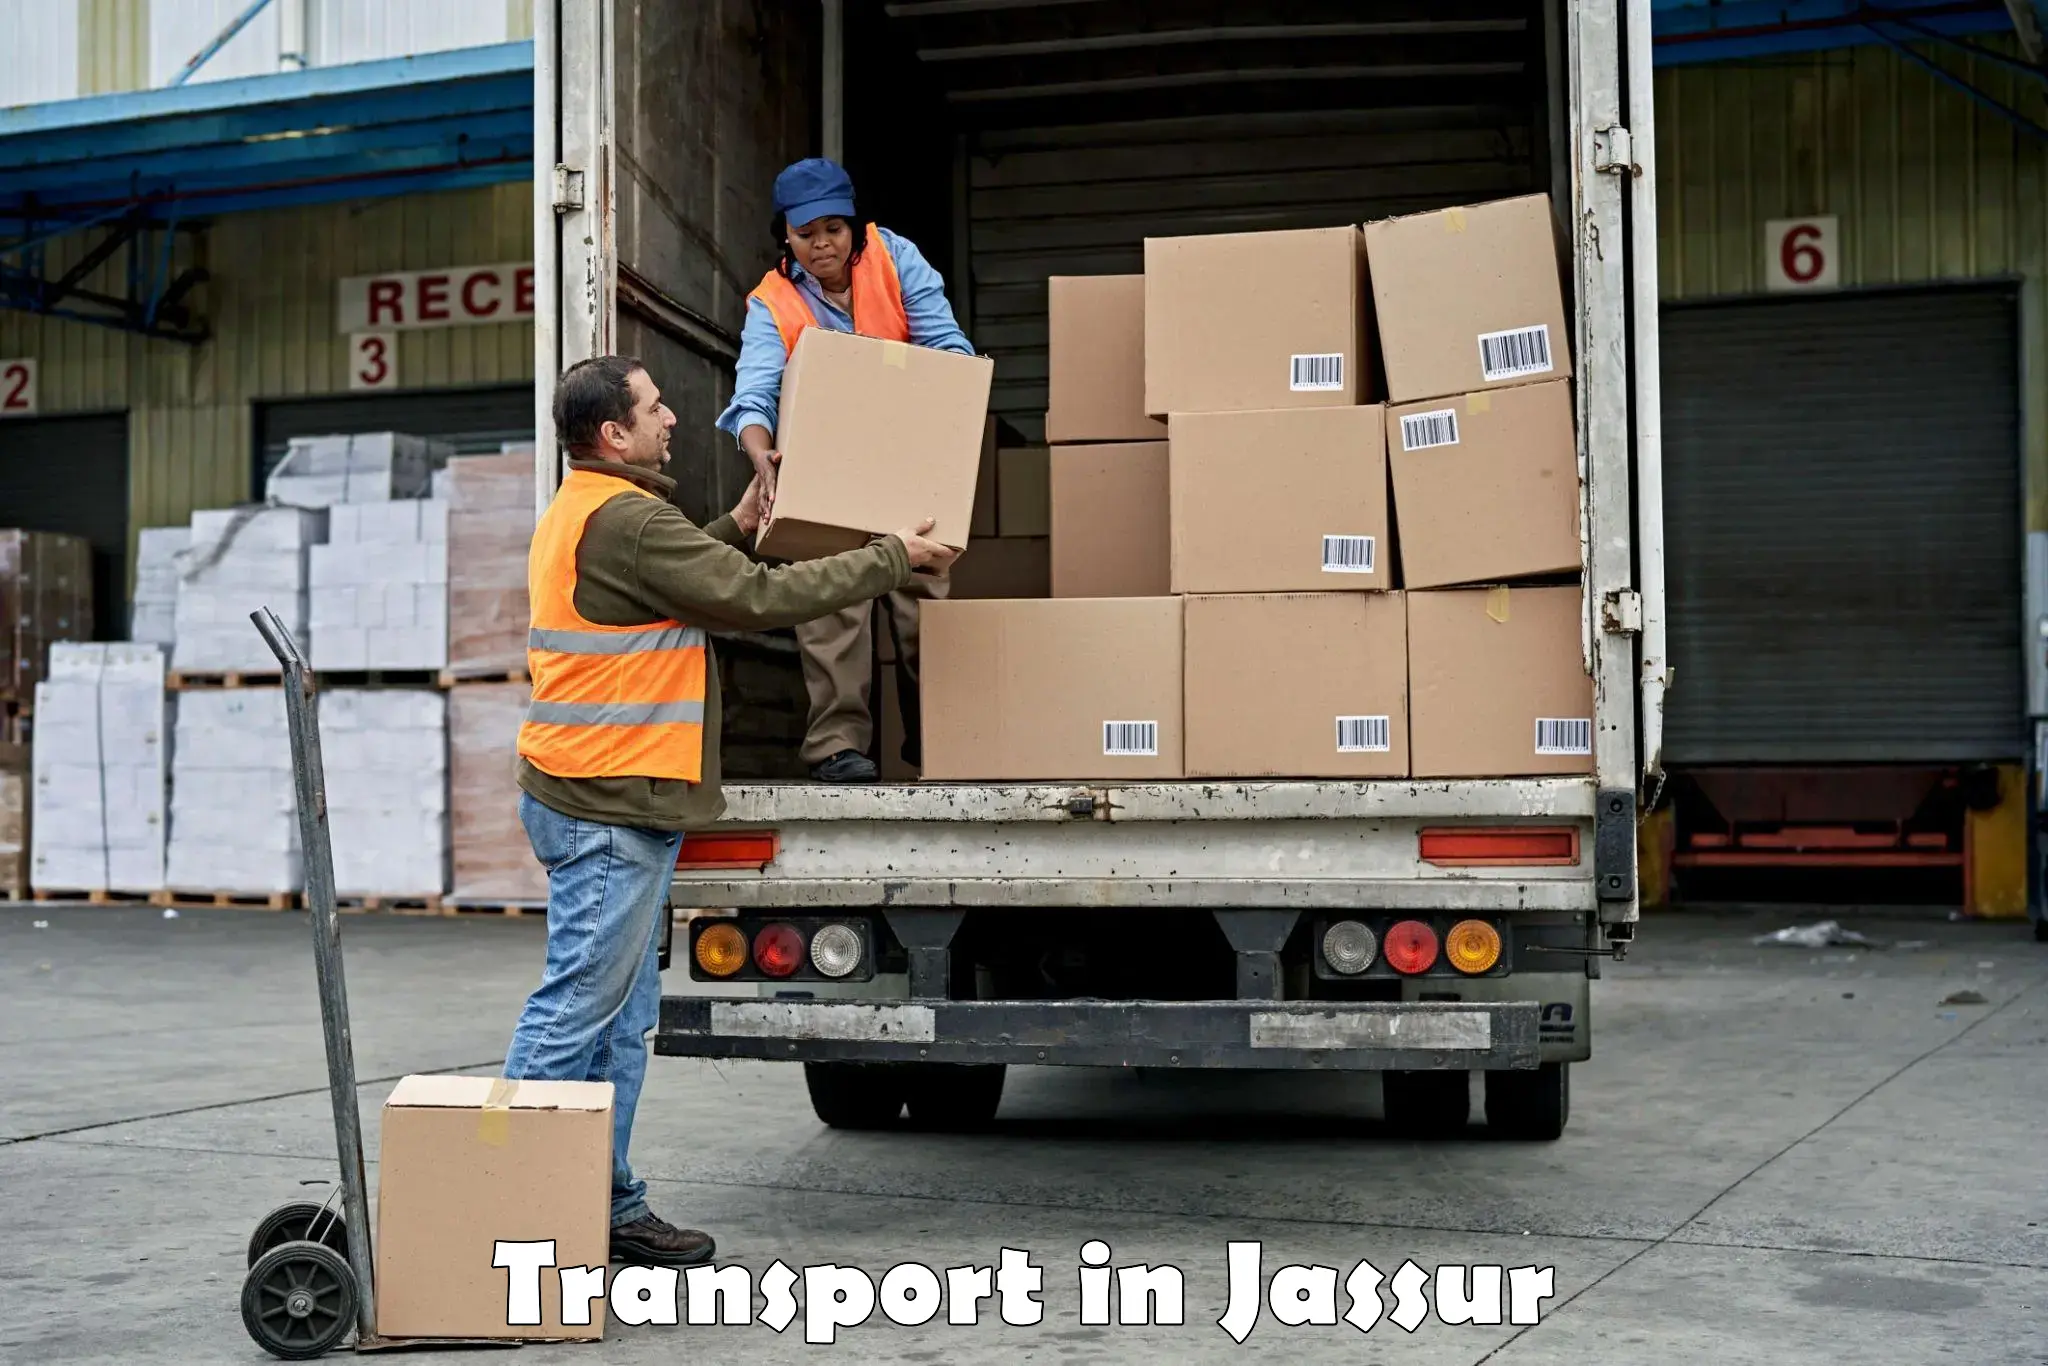 Cargo transport services in Jassur